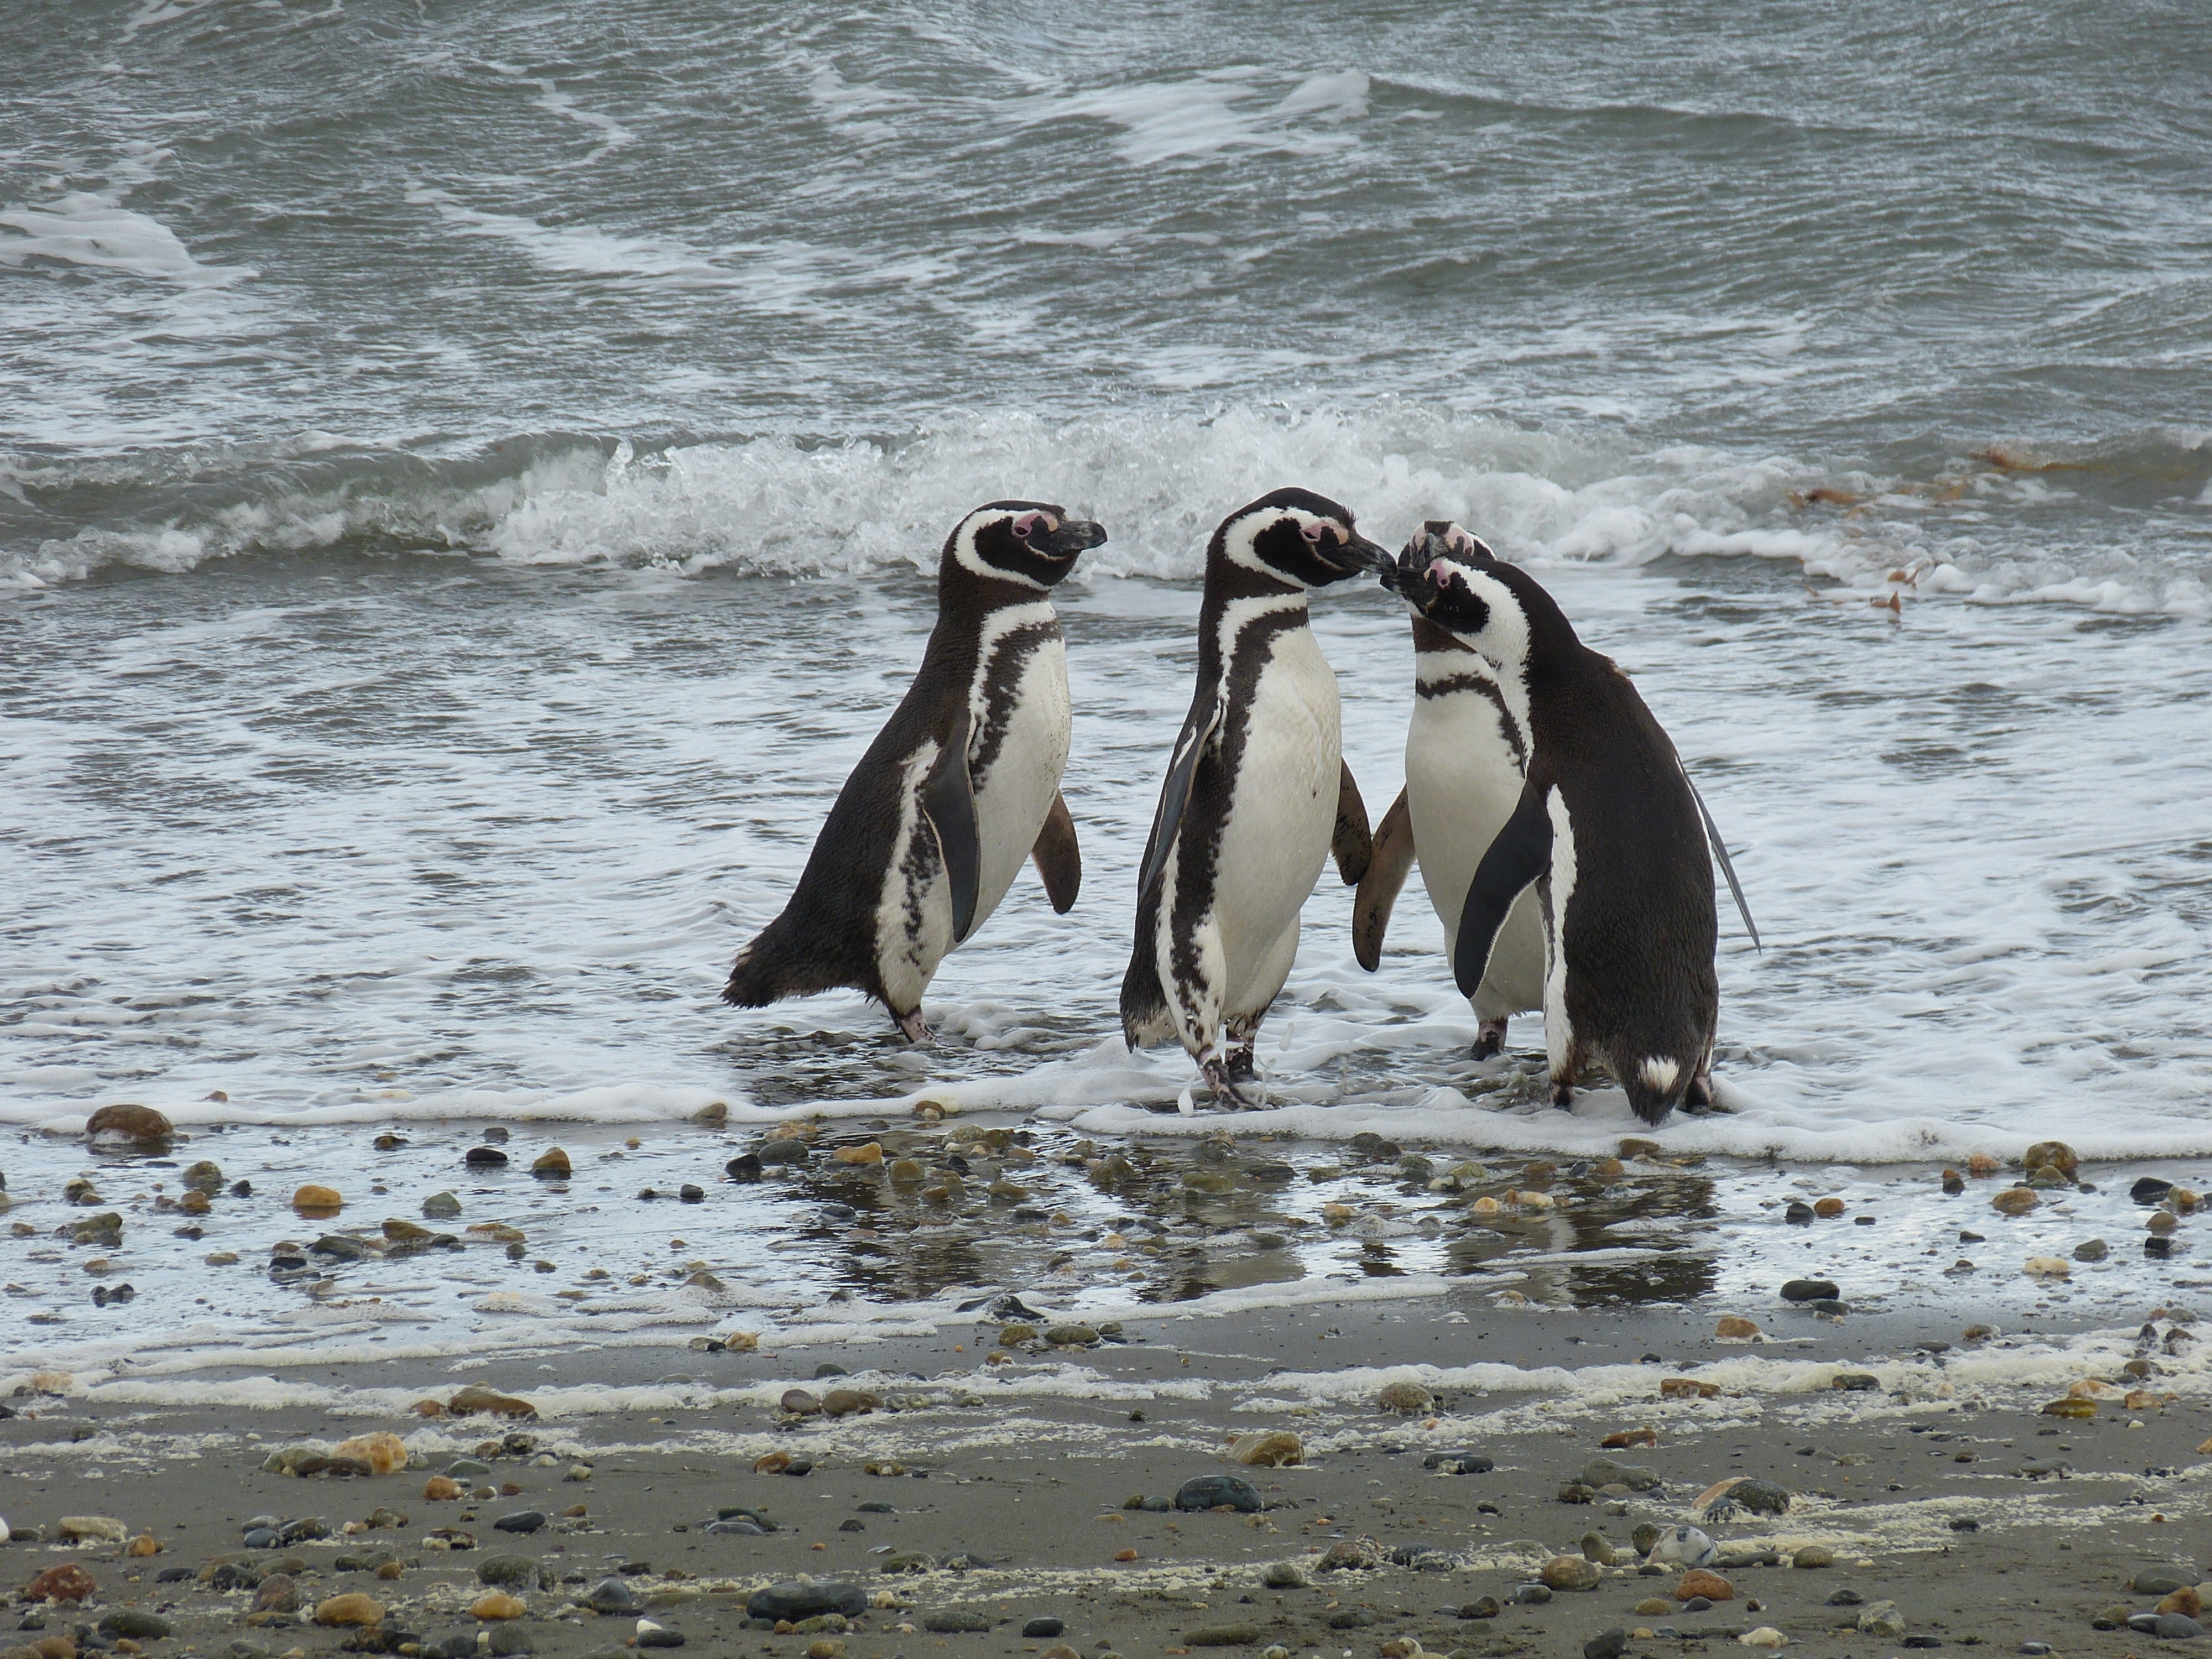 black and white penguins